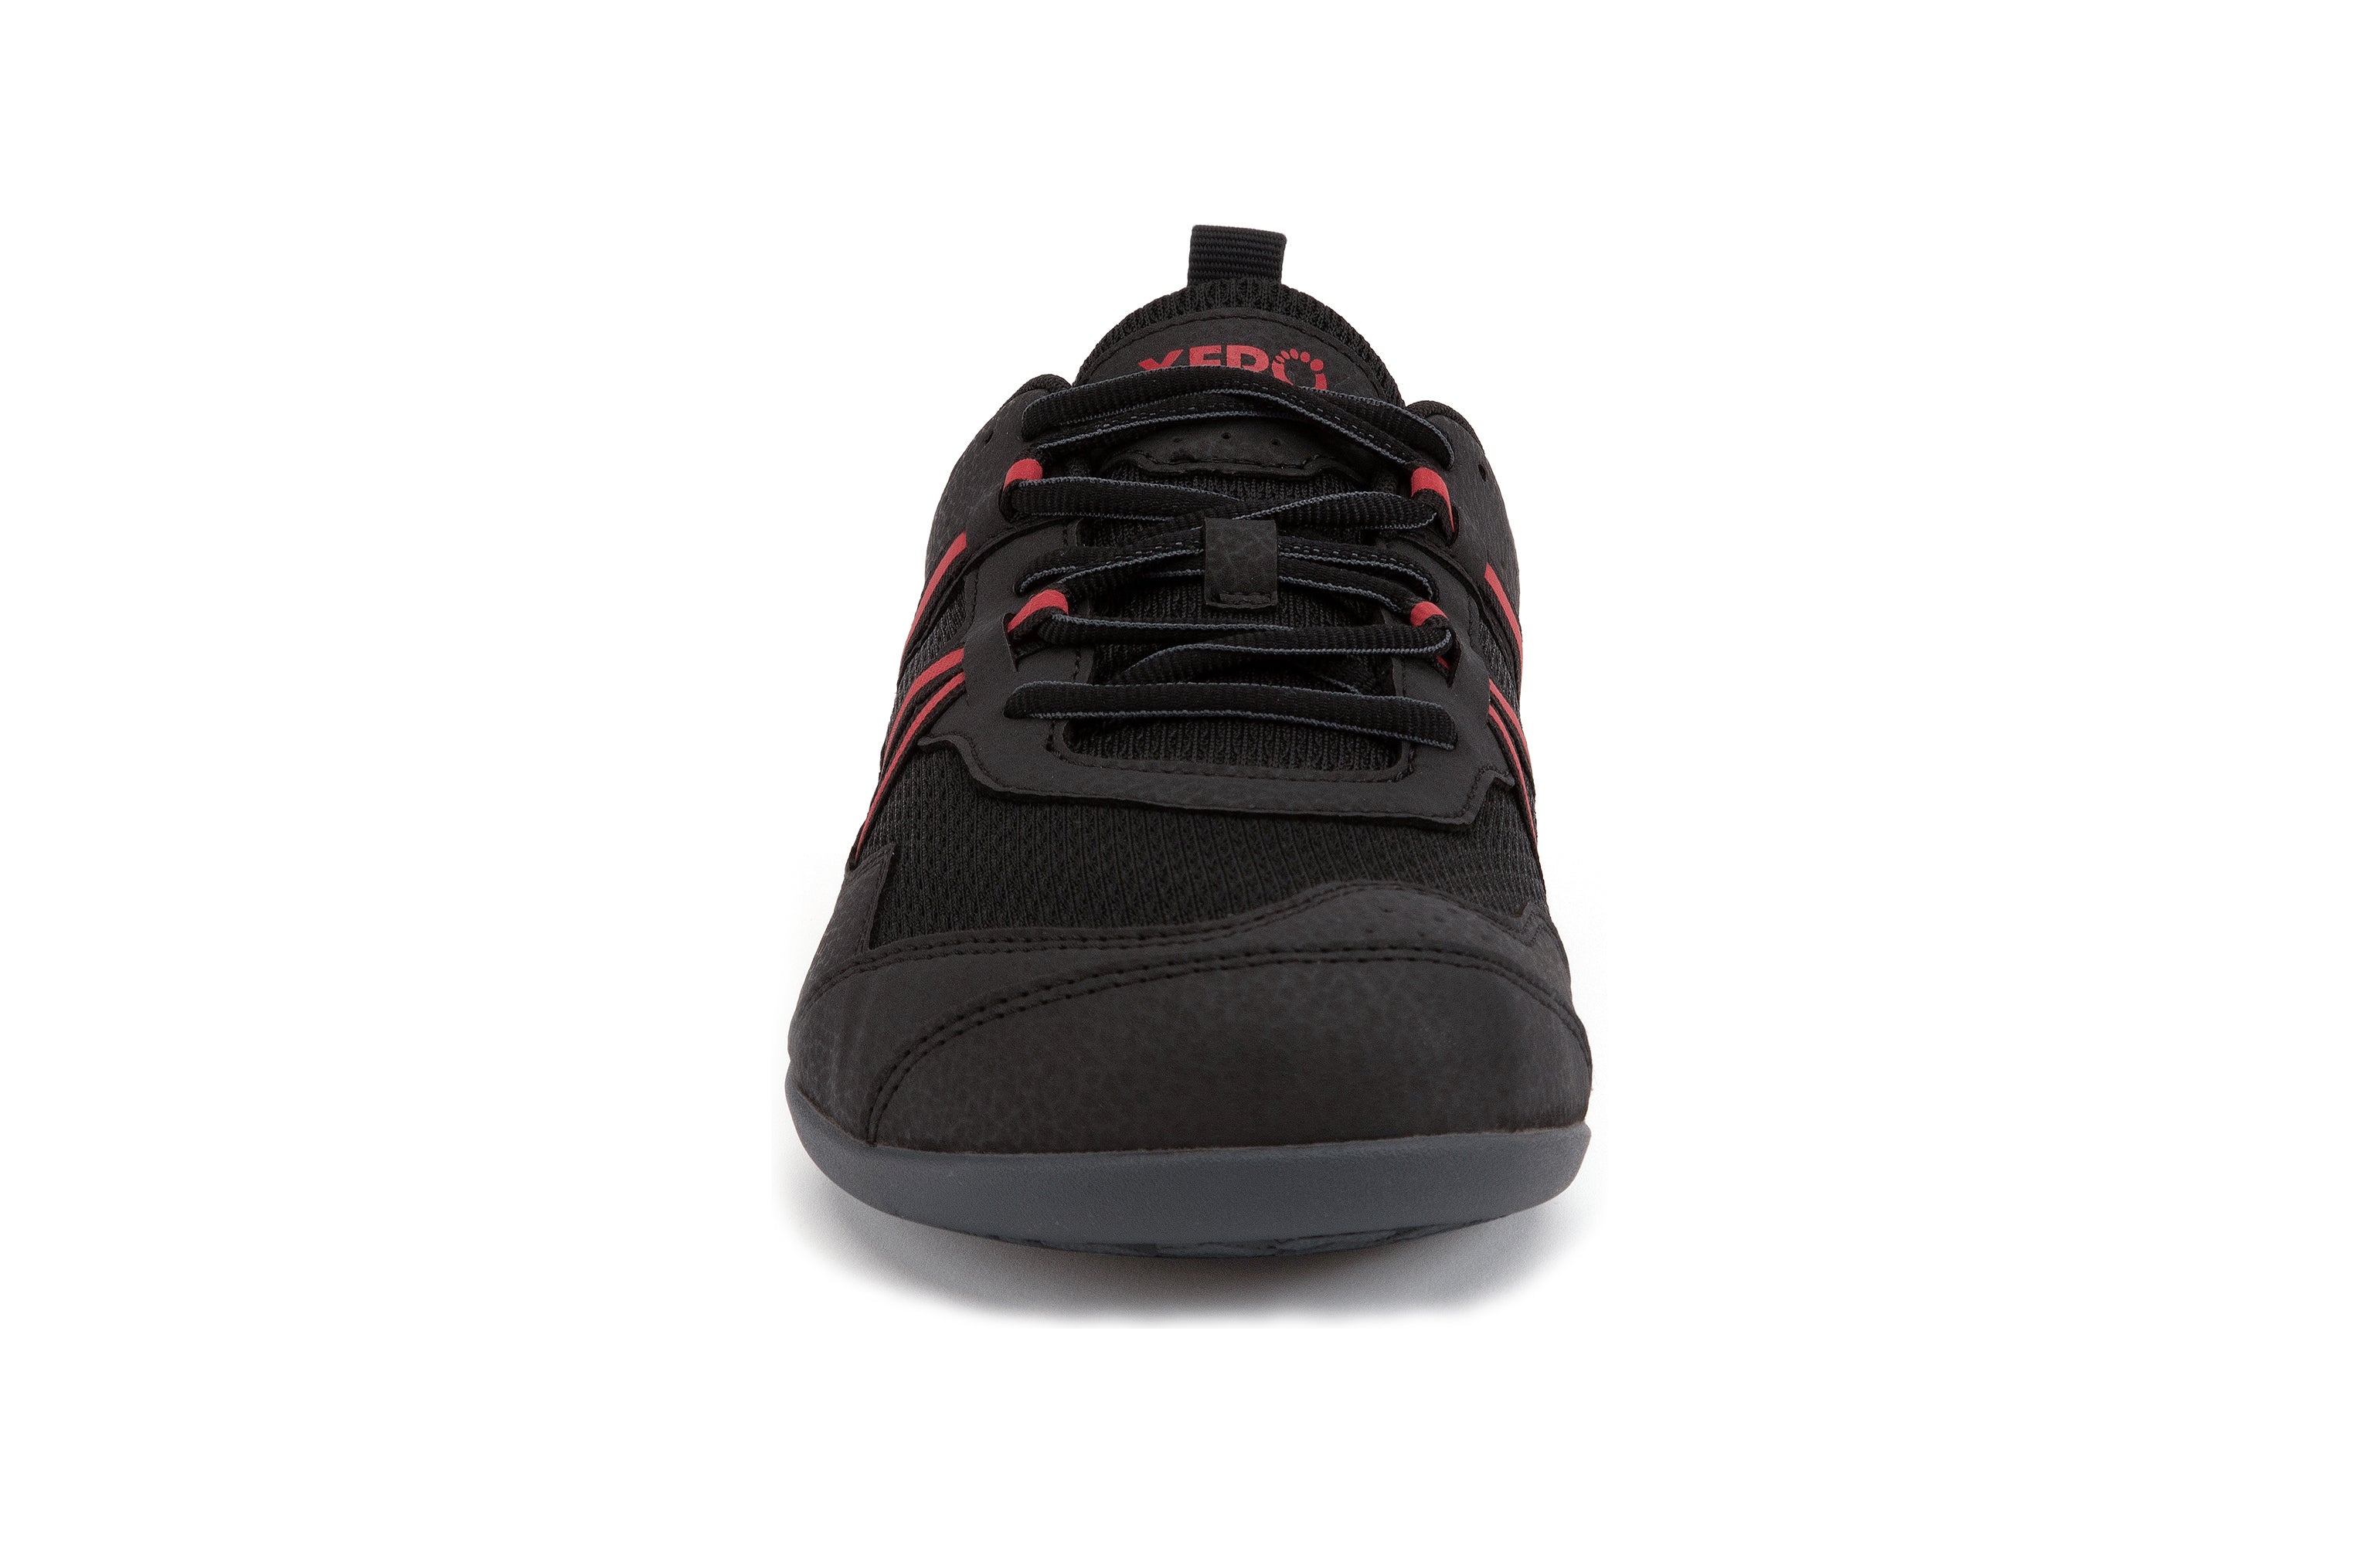 Xero Shoes Prio barfods løbesko/træningssko til mænd i farven black / samba red, forfra